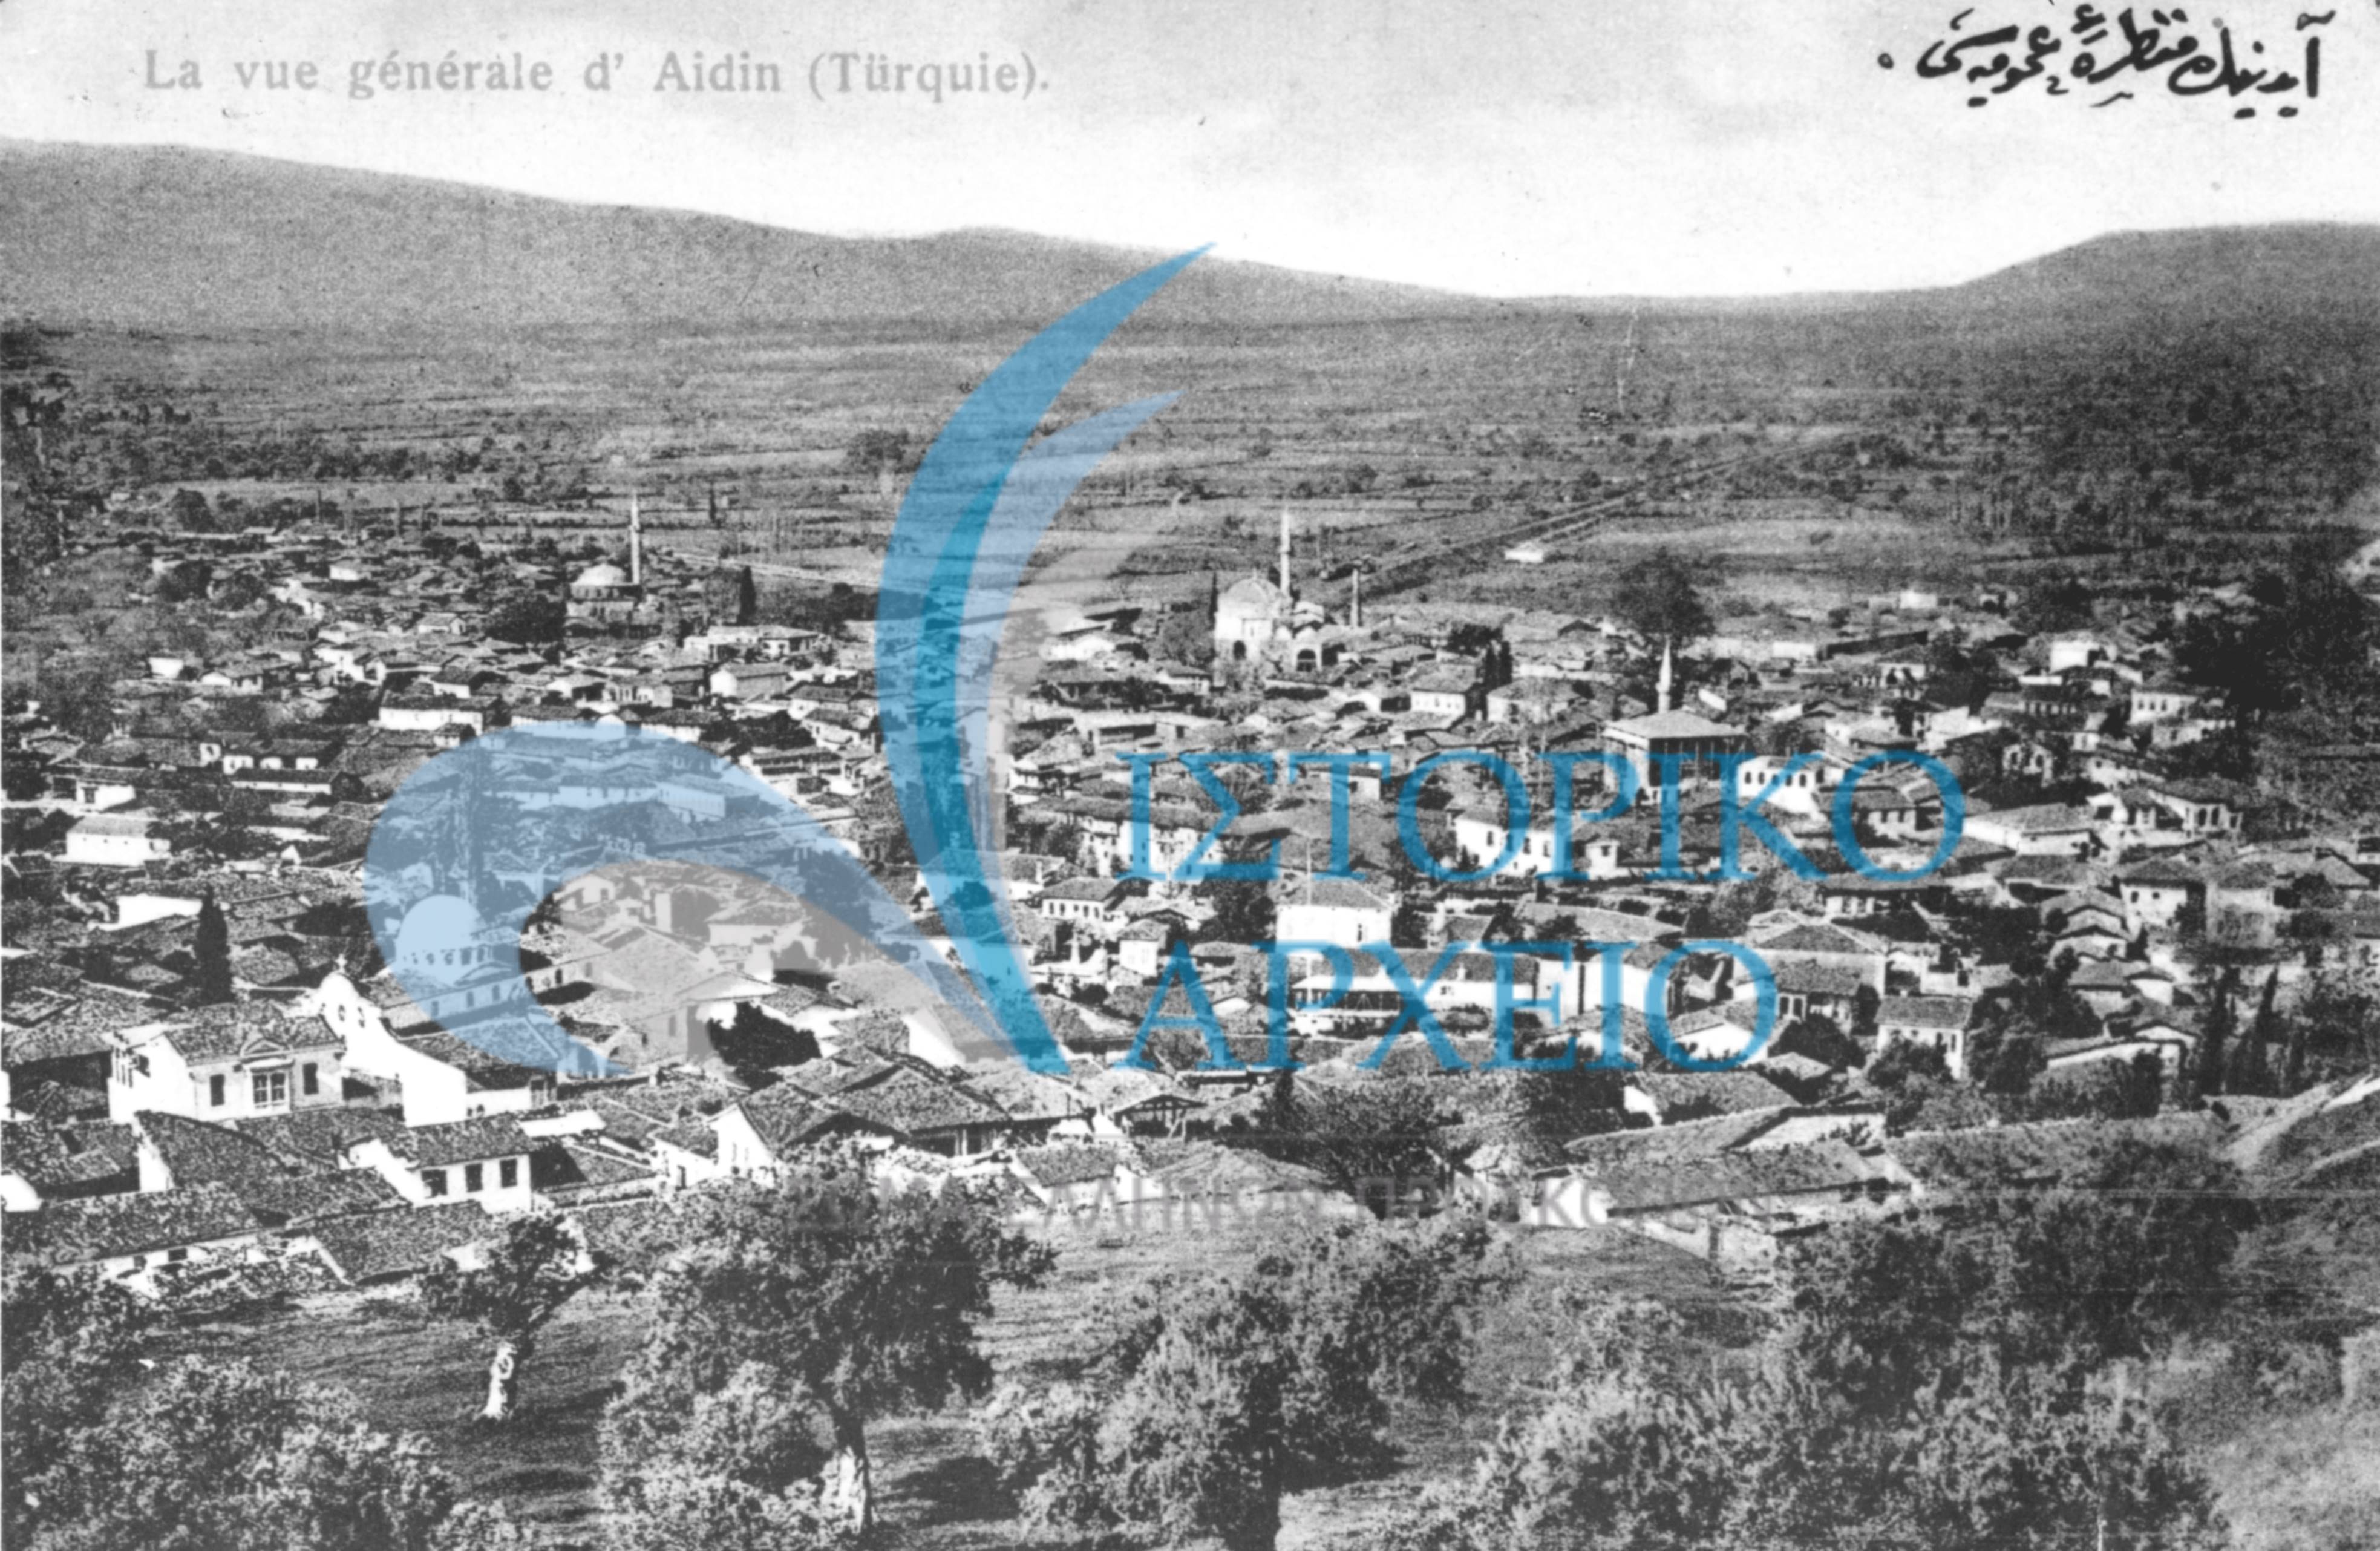 Άποψη του Αϊδινίου το 1920 σε επιστολικό δελτάριο.